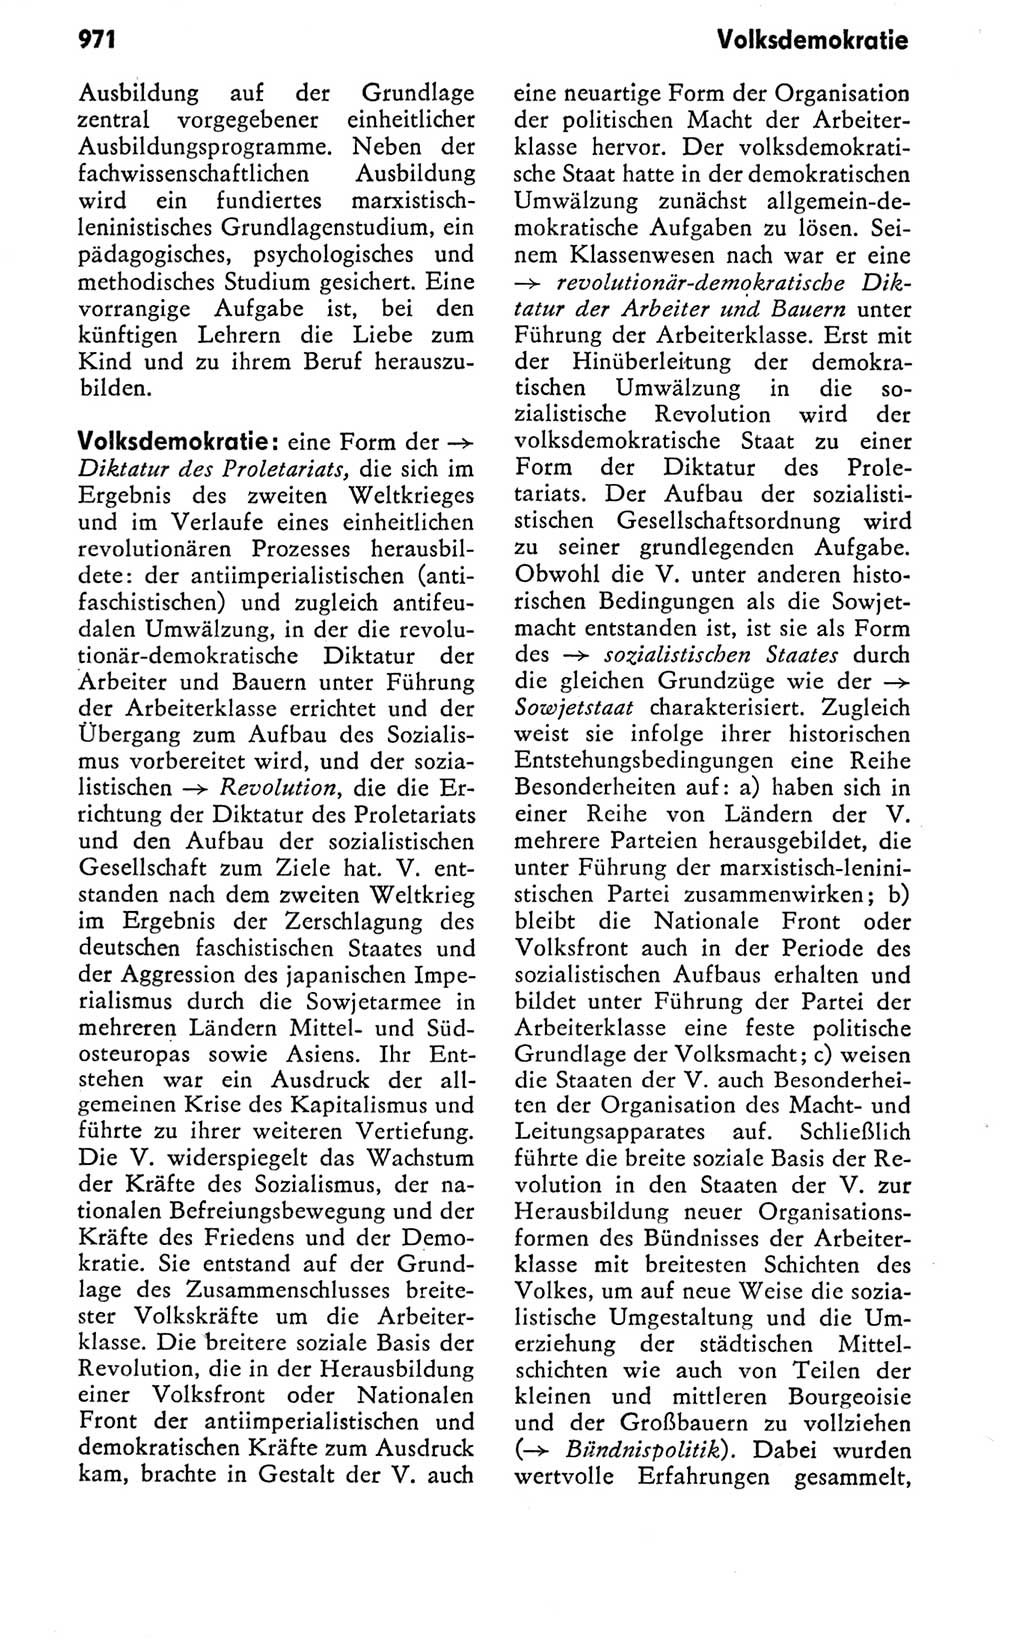 Kleines politisches Wörterbuch [Deutsche Demokratische Republik (DDR)] 1978, Seite 971 (Kl. pol. Wb. DDR 1978, S. 971)